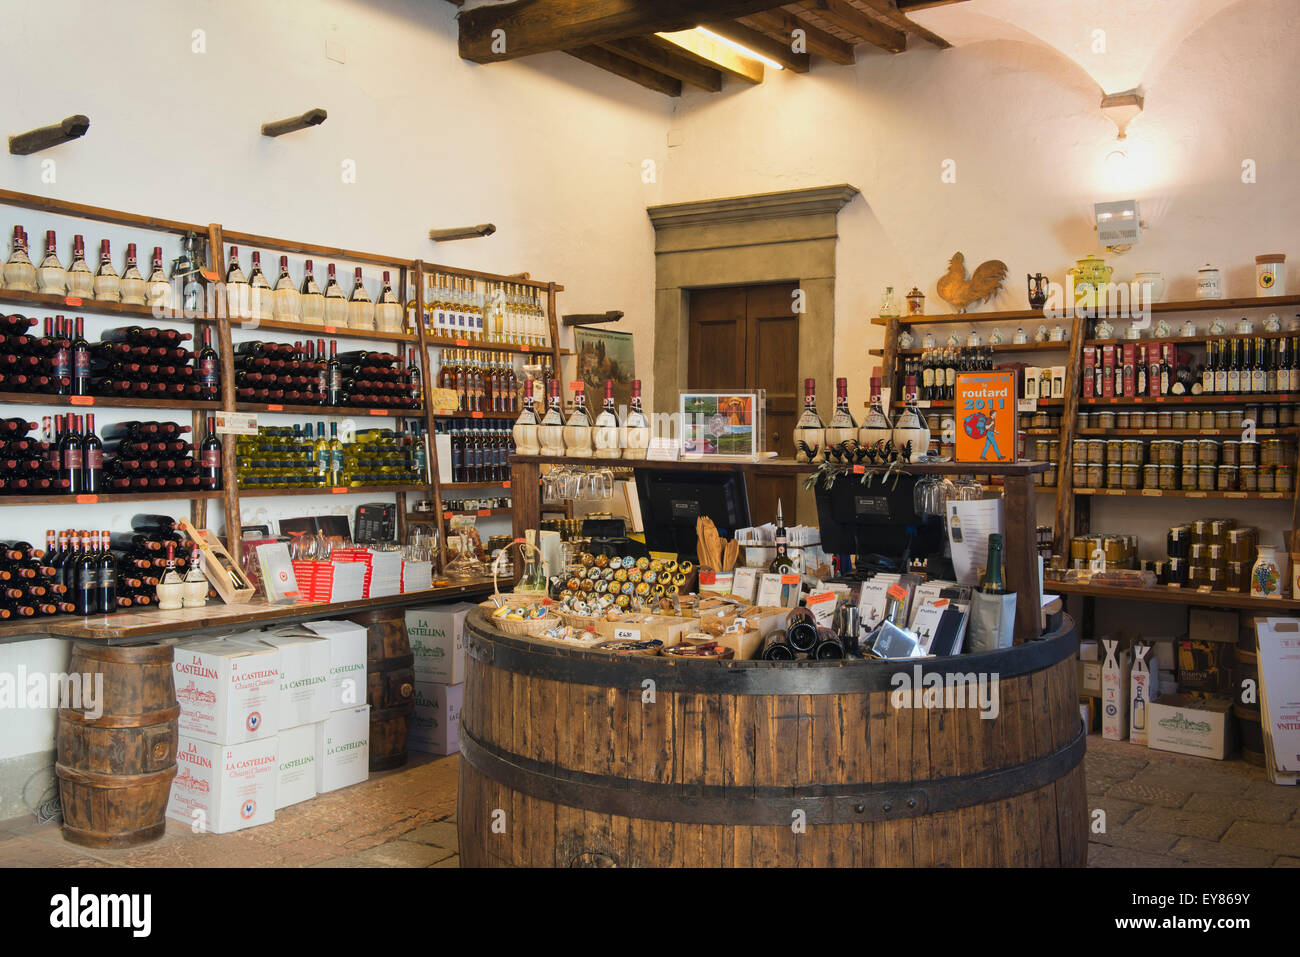 Vinothek mit Weinflaschen und kleine Köstlichkeiten, Castellina in Chianti, Toskana, Italien Stockfoto